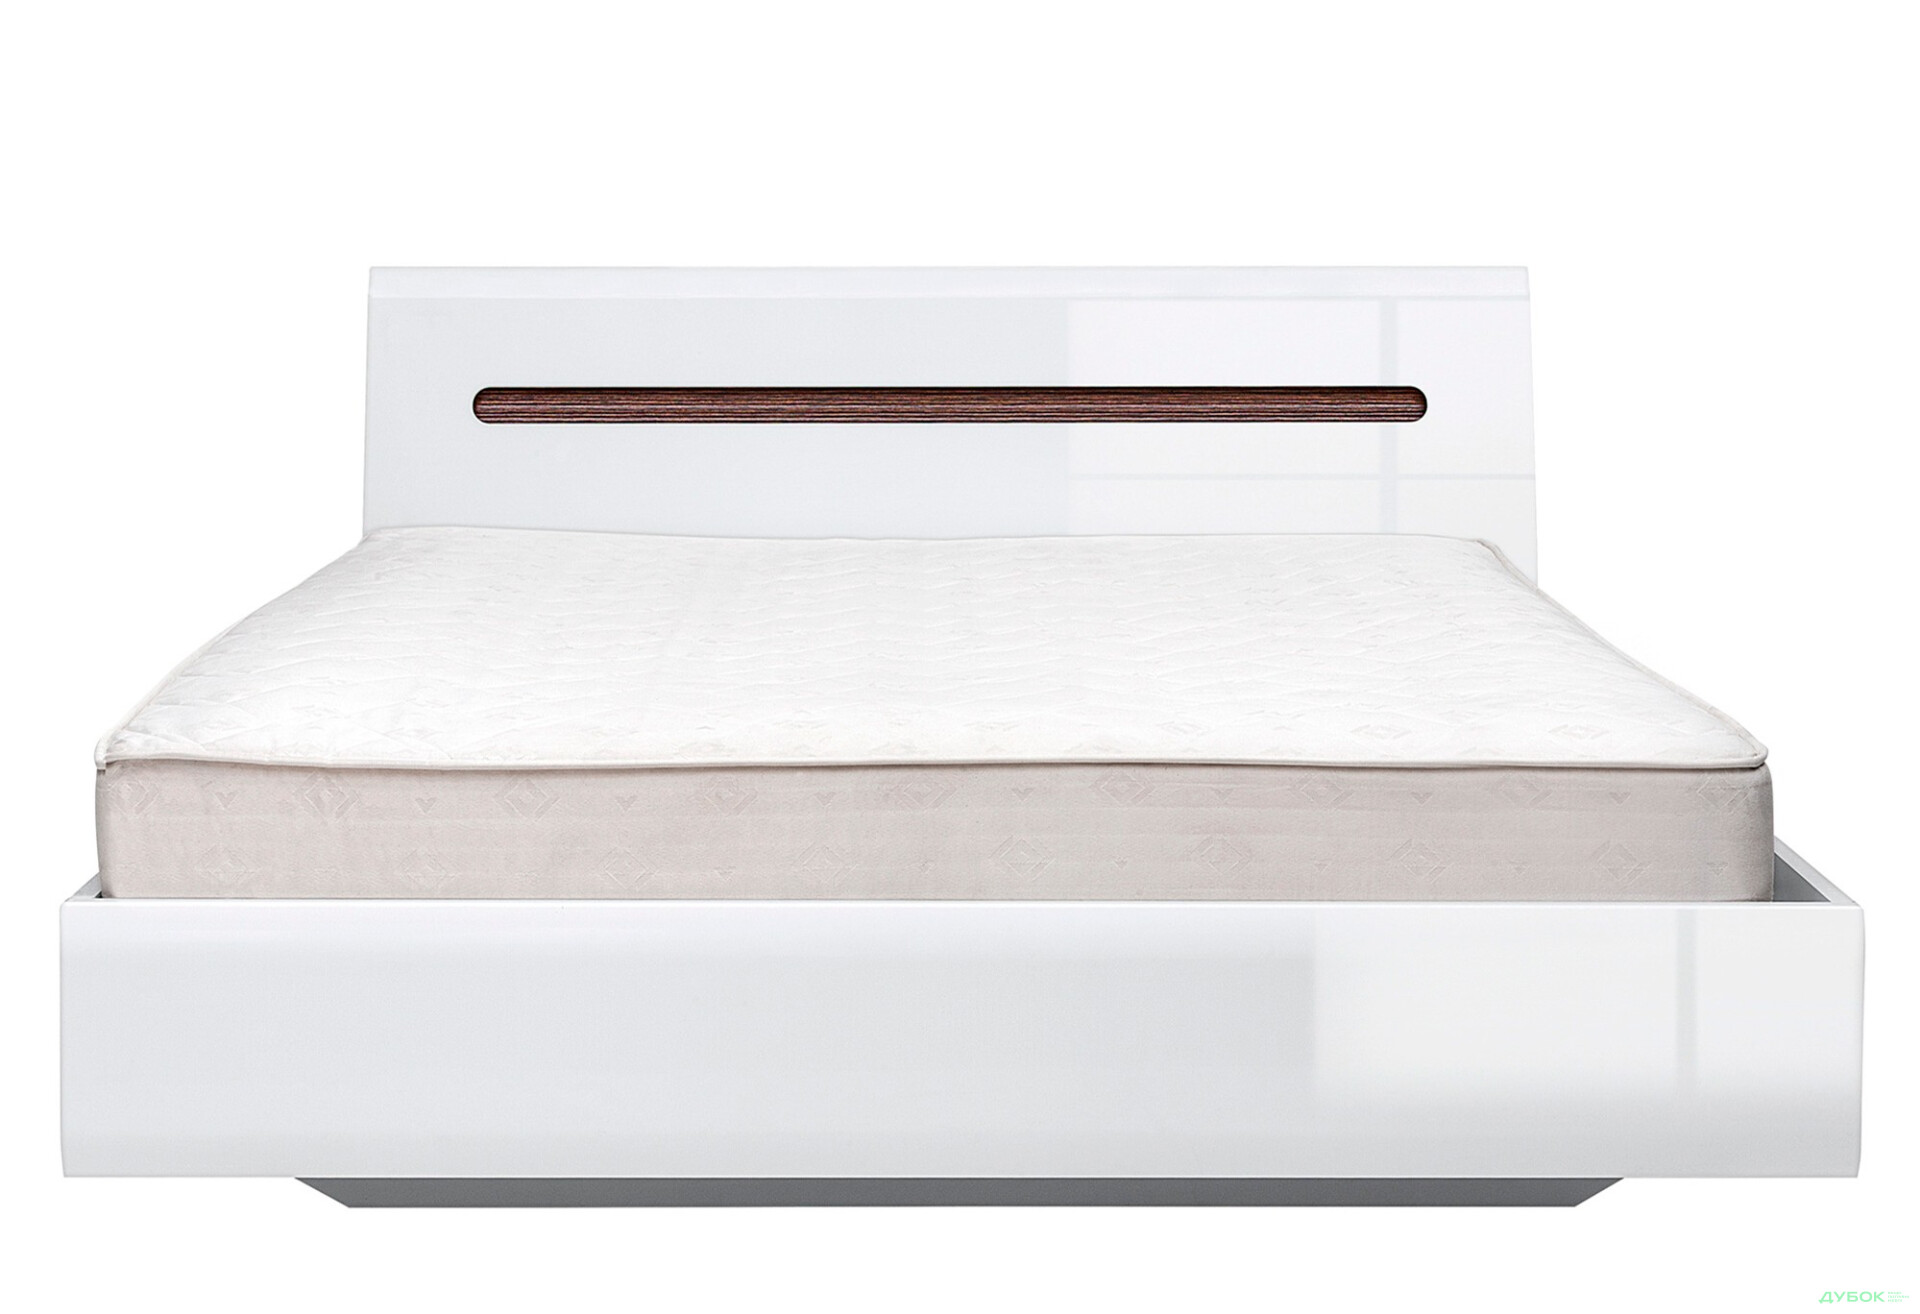 Фото 3 - Кровать ВМК Ацтека (без вклада) 180х200 см, белая